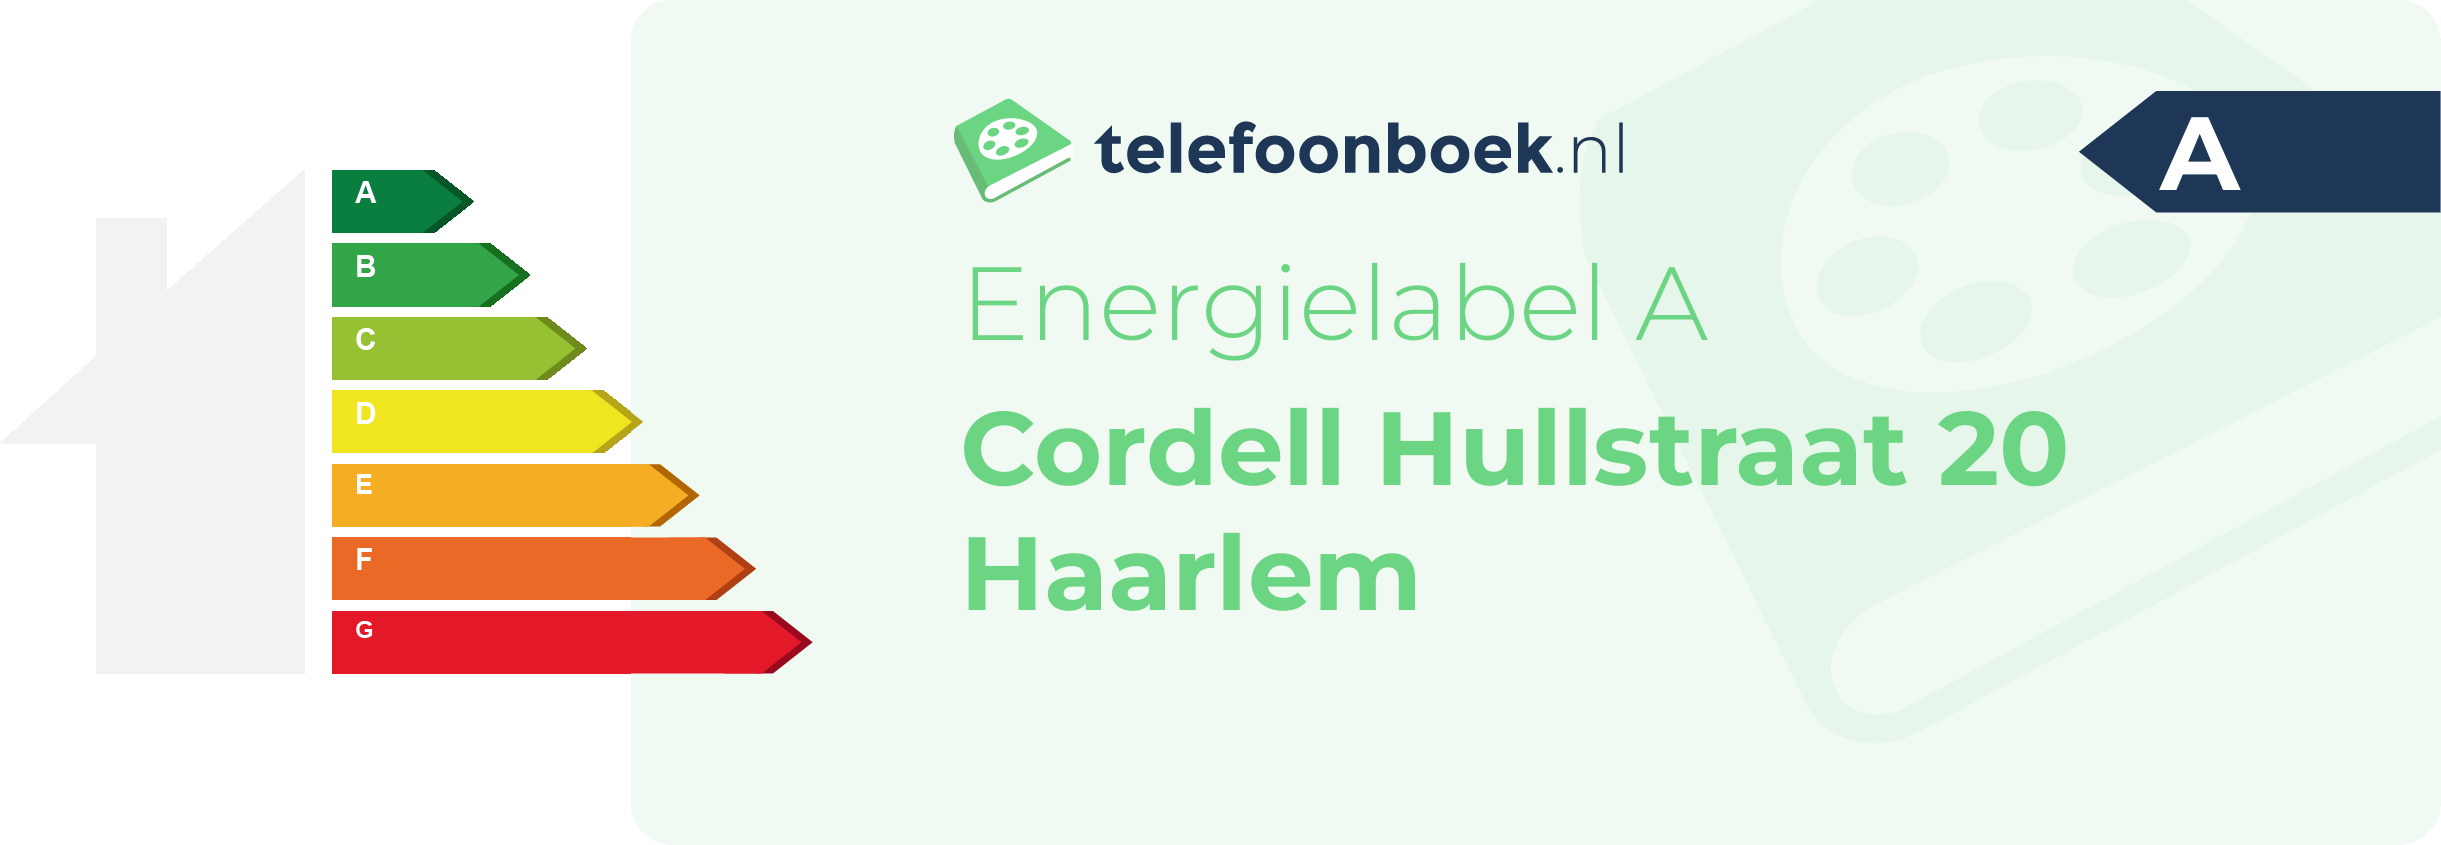 Energielabel Cordell Hullstraat 20 Haarlem